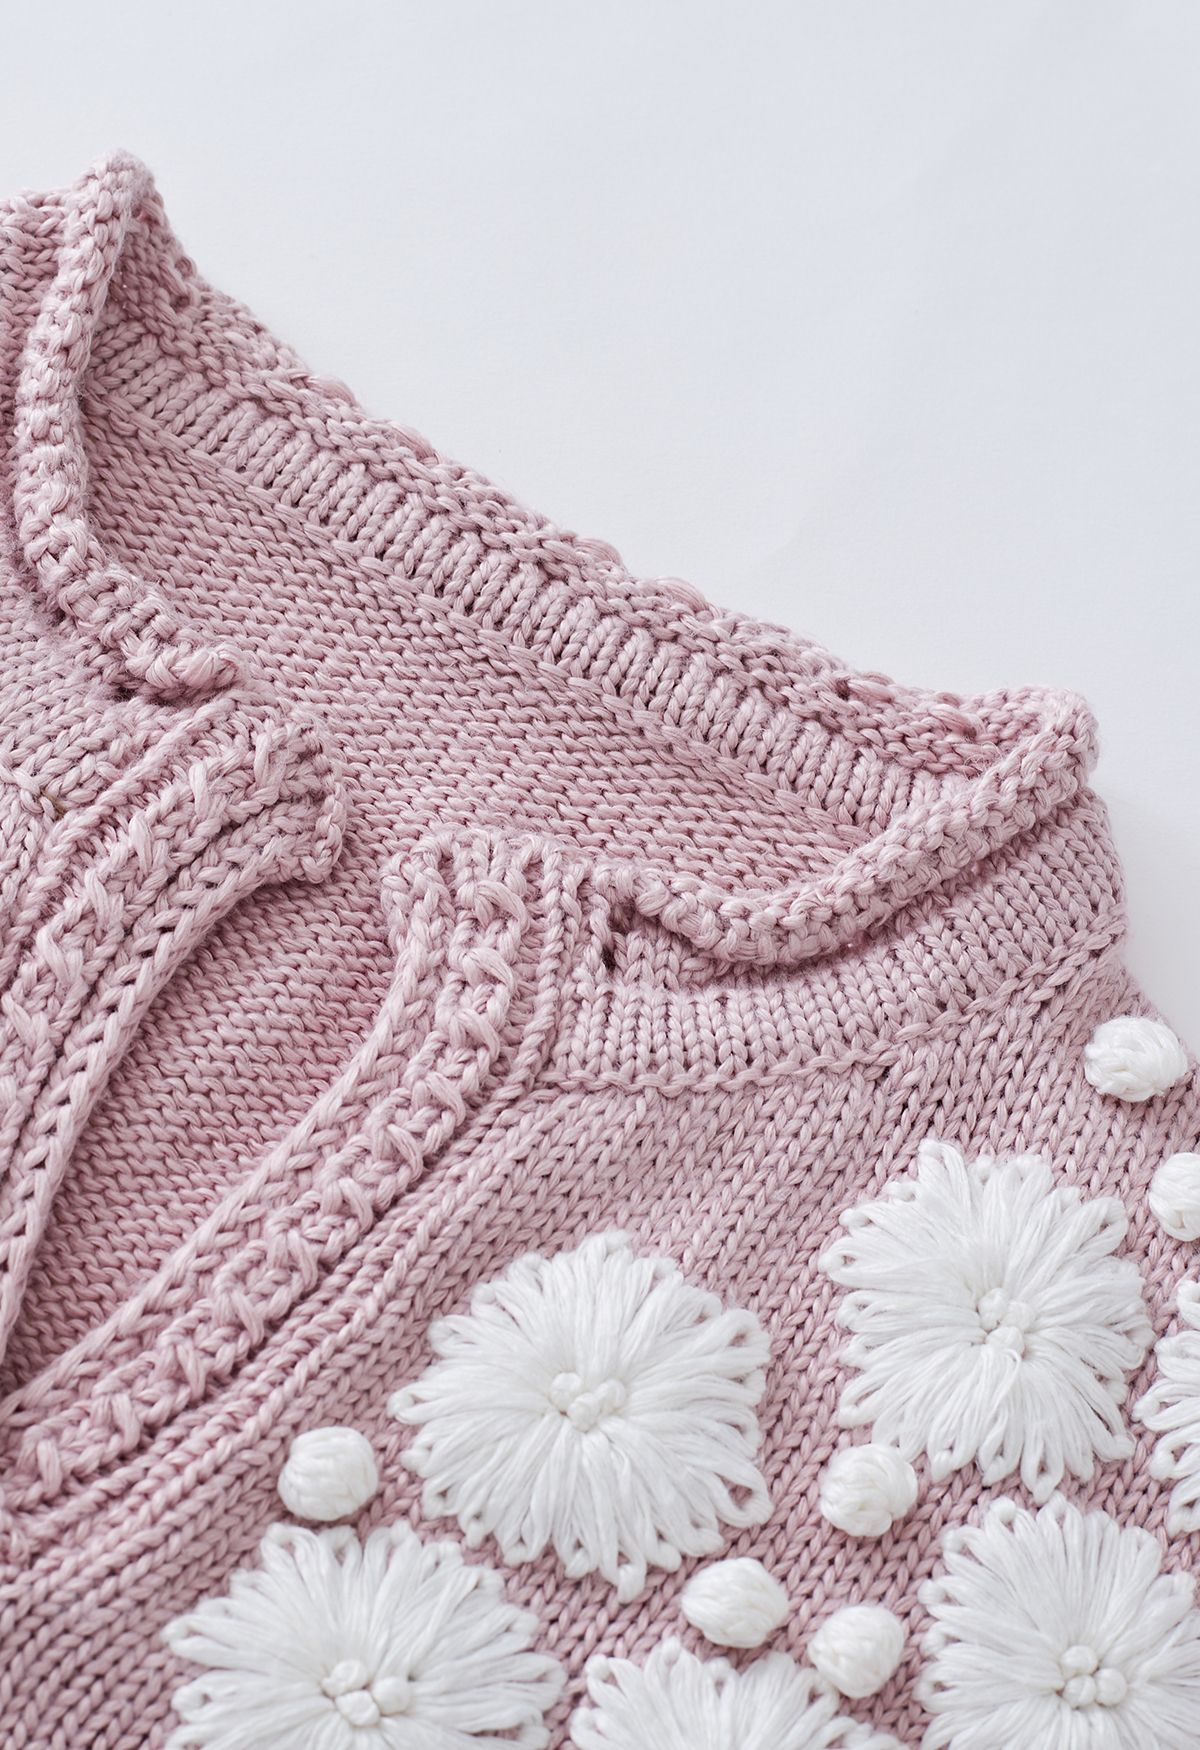 Suéter de punto con cuello en V y puntadas florales de Blooming Passion en rosa